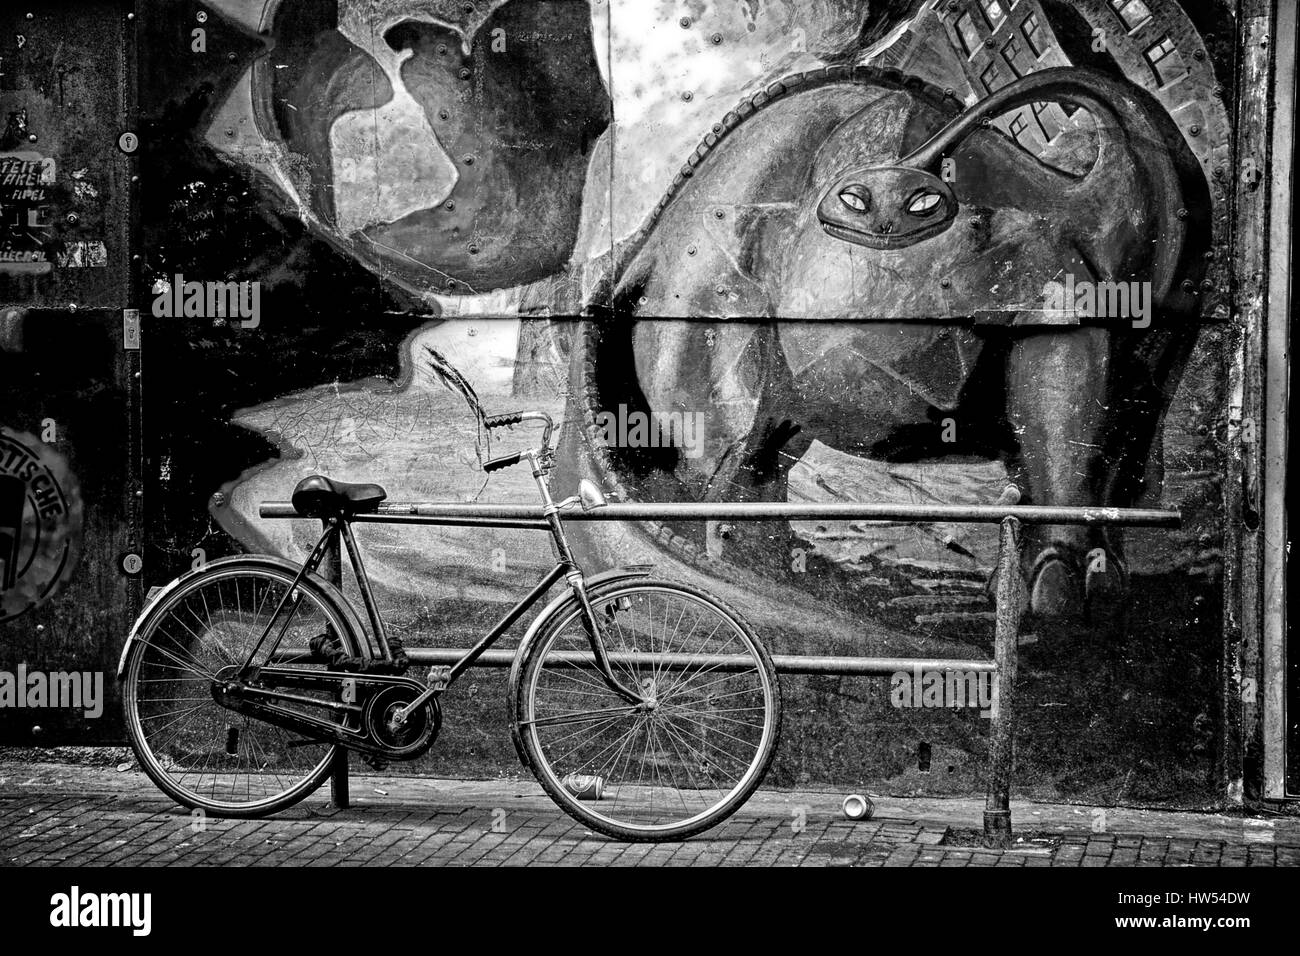 Graffiti illustrazione di un animale preistorico di apparire come la visualizzazione di una bicicletta parcheggiata in strada. Amsterdam, Paesi Bassi. Foto Stock